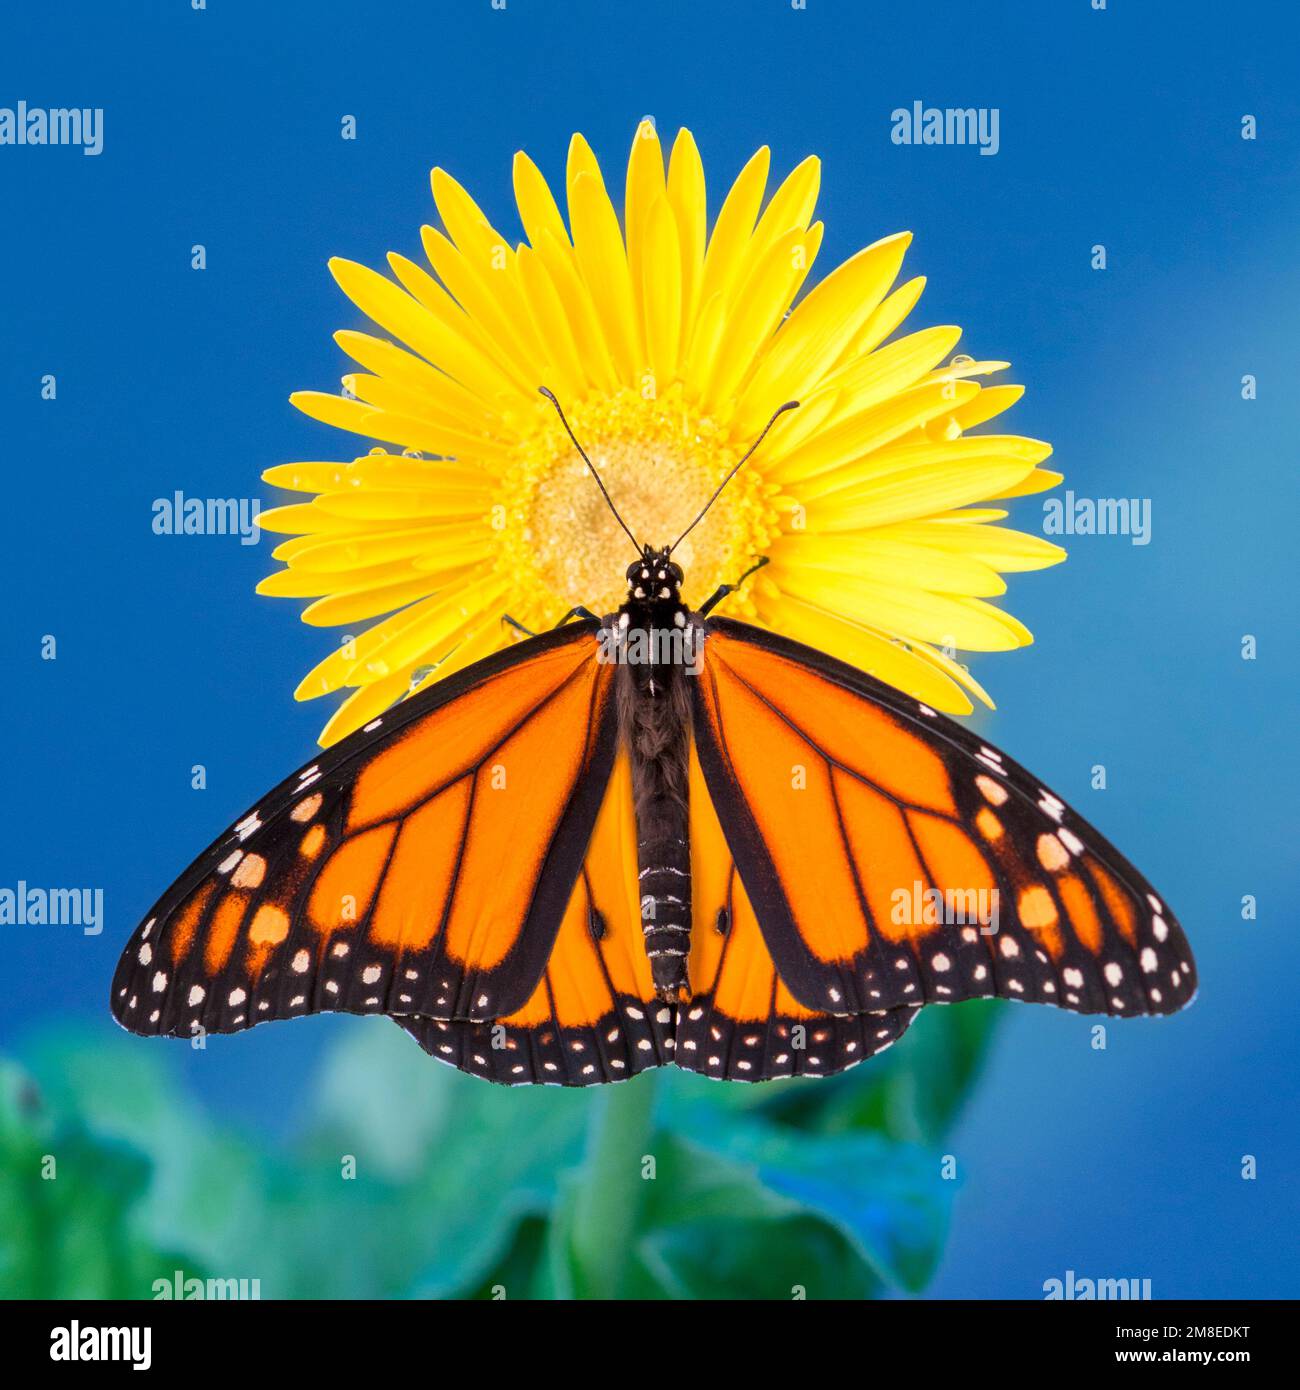 Un papillon monarque mâle (danaus plexippus) reposant sur une fleur de pâquerette jaune, avec des ailes étalées. Banque D'Images